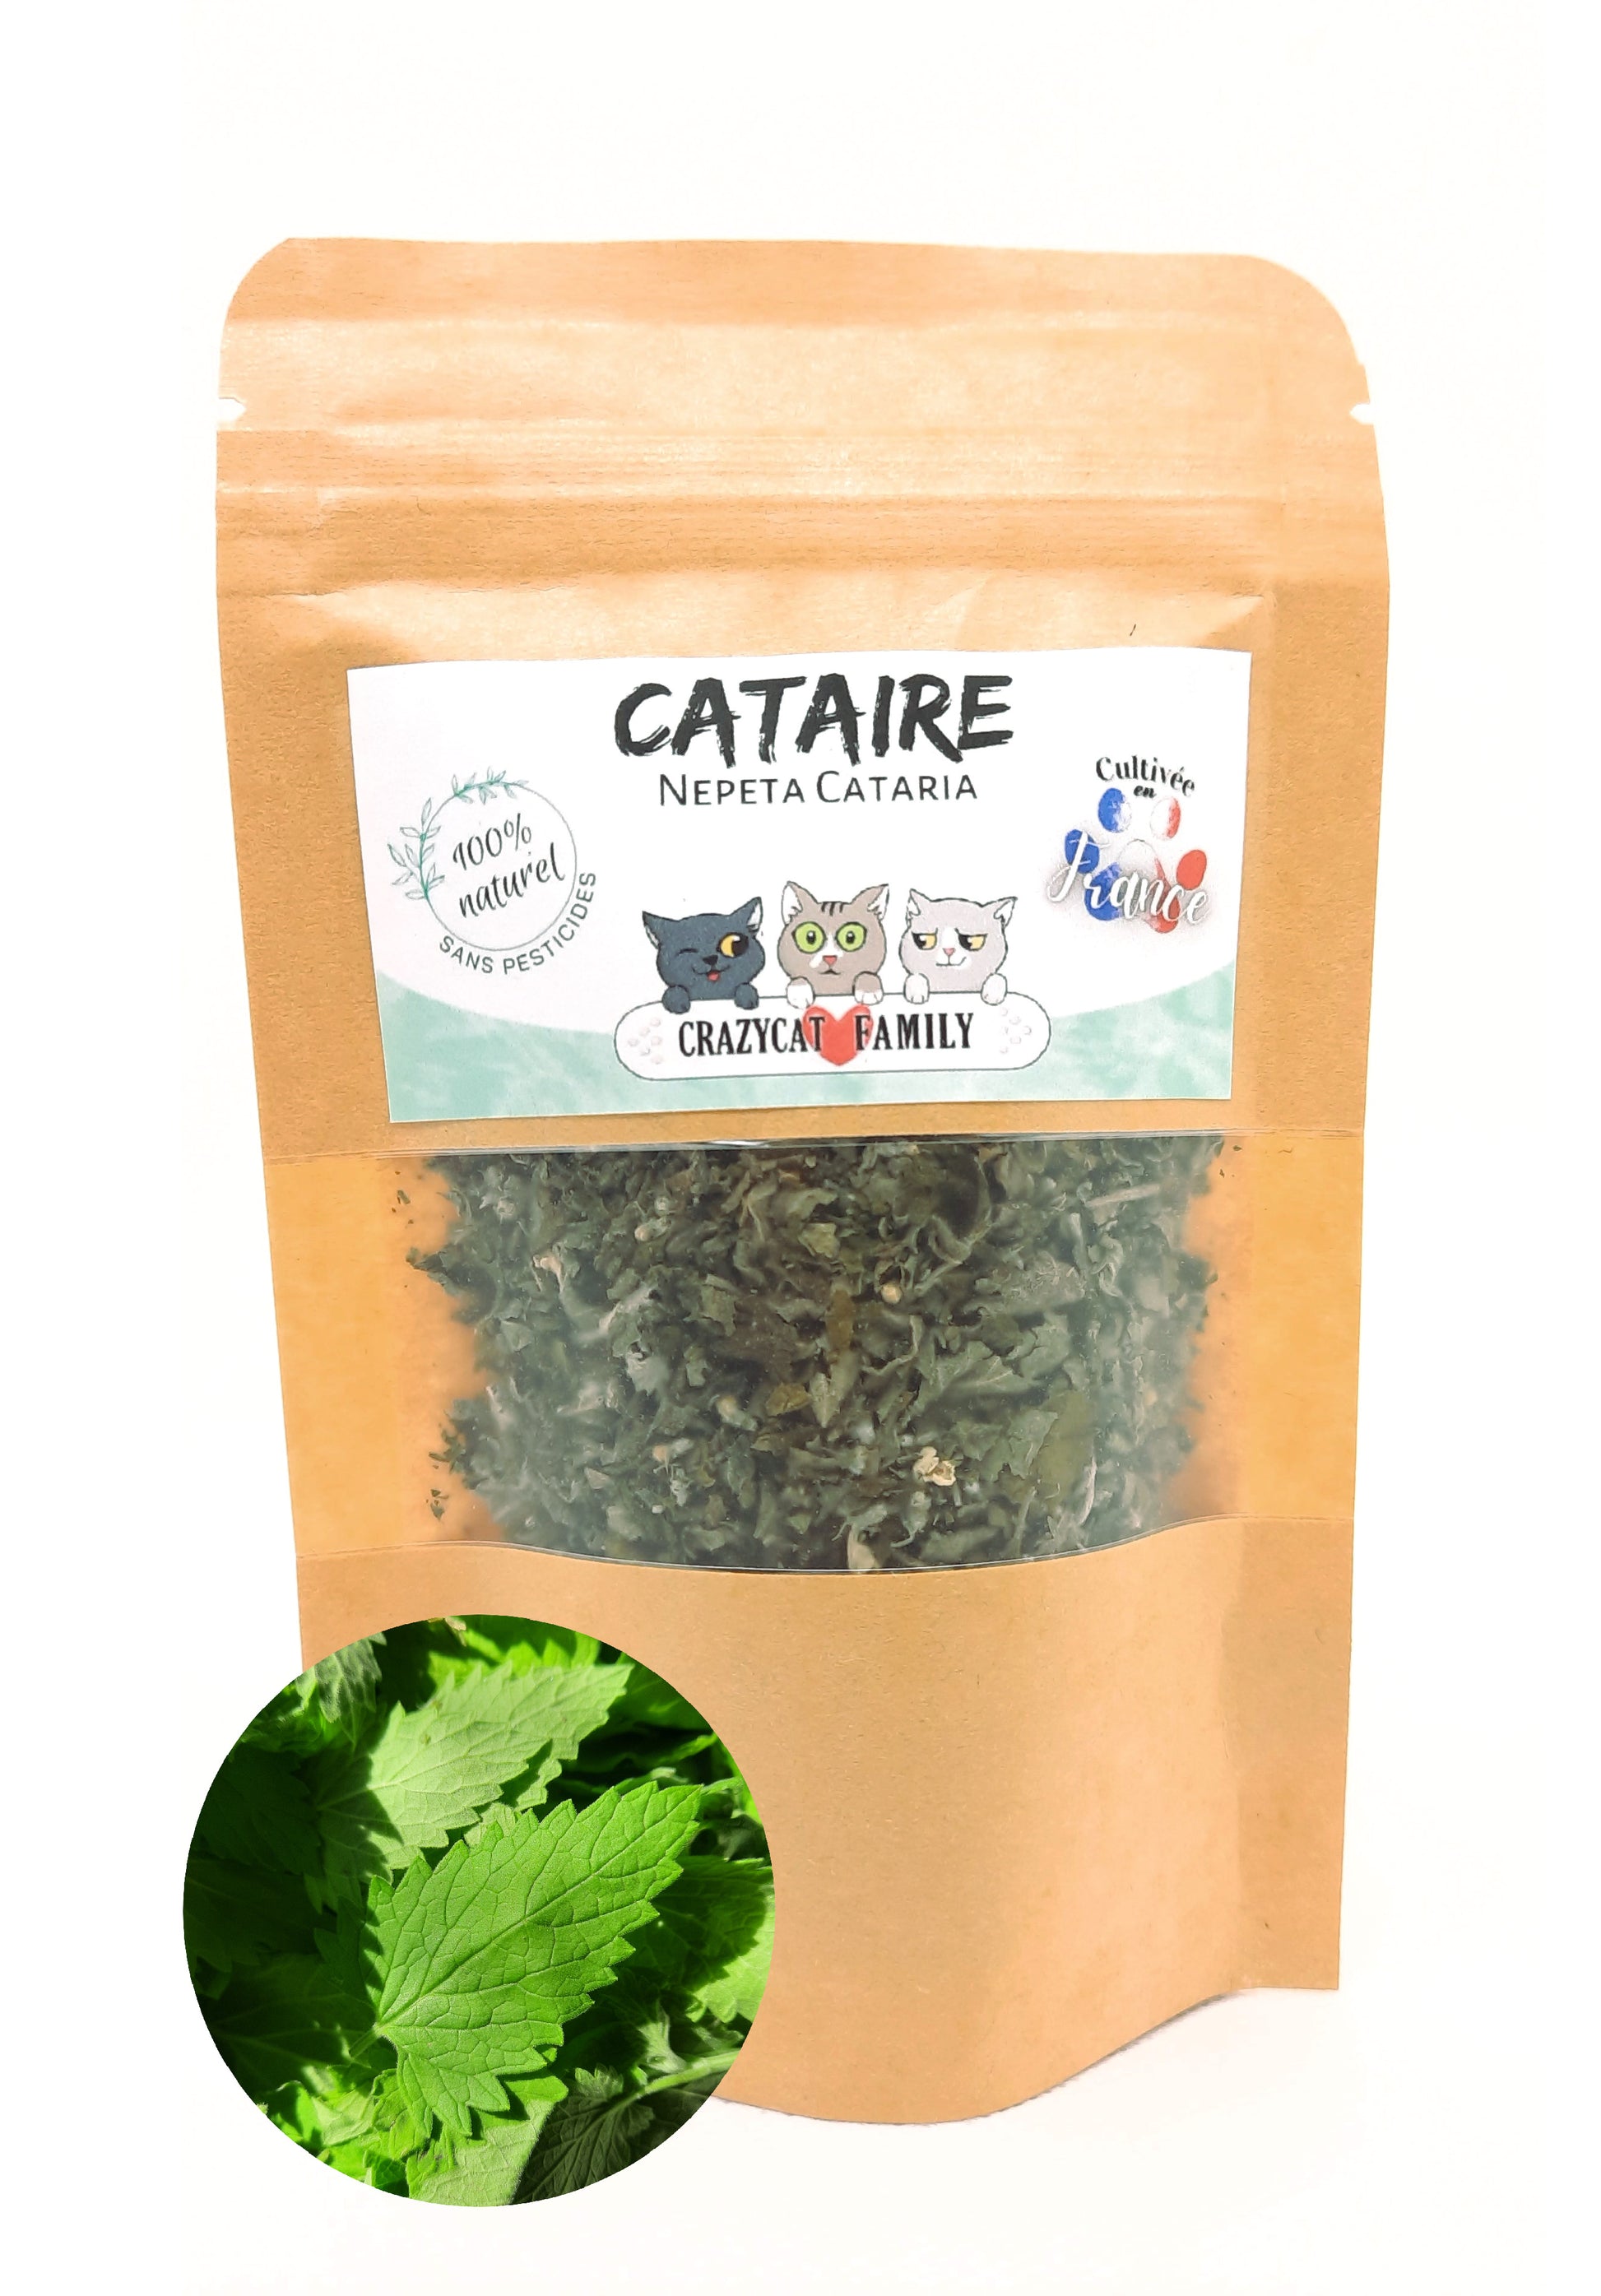 Cataire (menthe à chat) cultivée en France sans pesticides